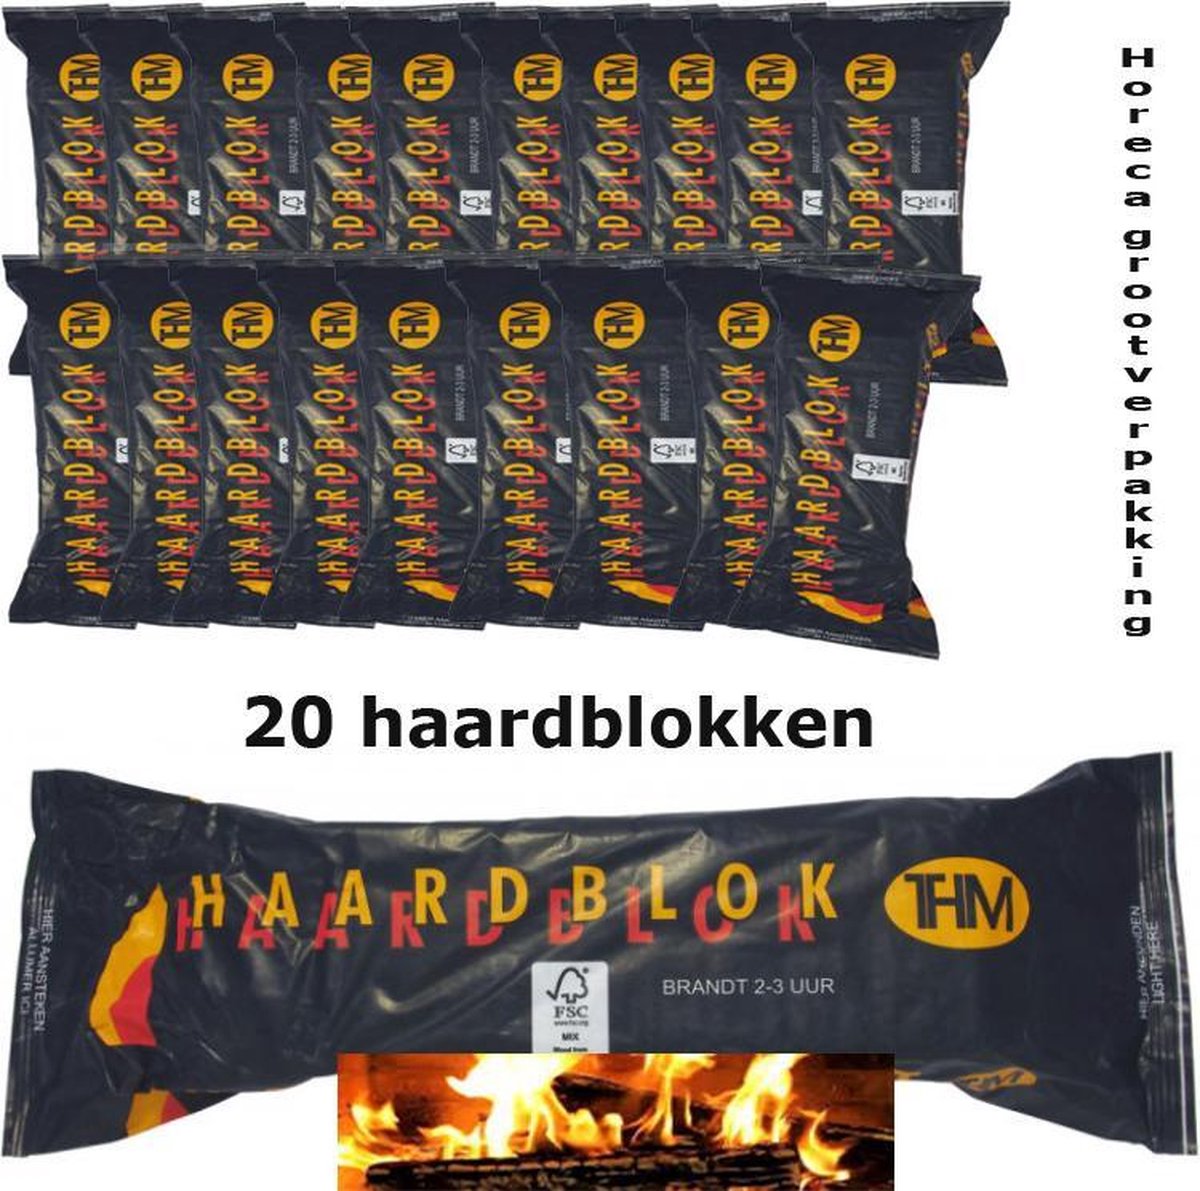 Afwijking Rodeo naam Haardblokken 20 stuks horecagrootverpakking | bol.com